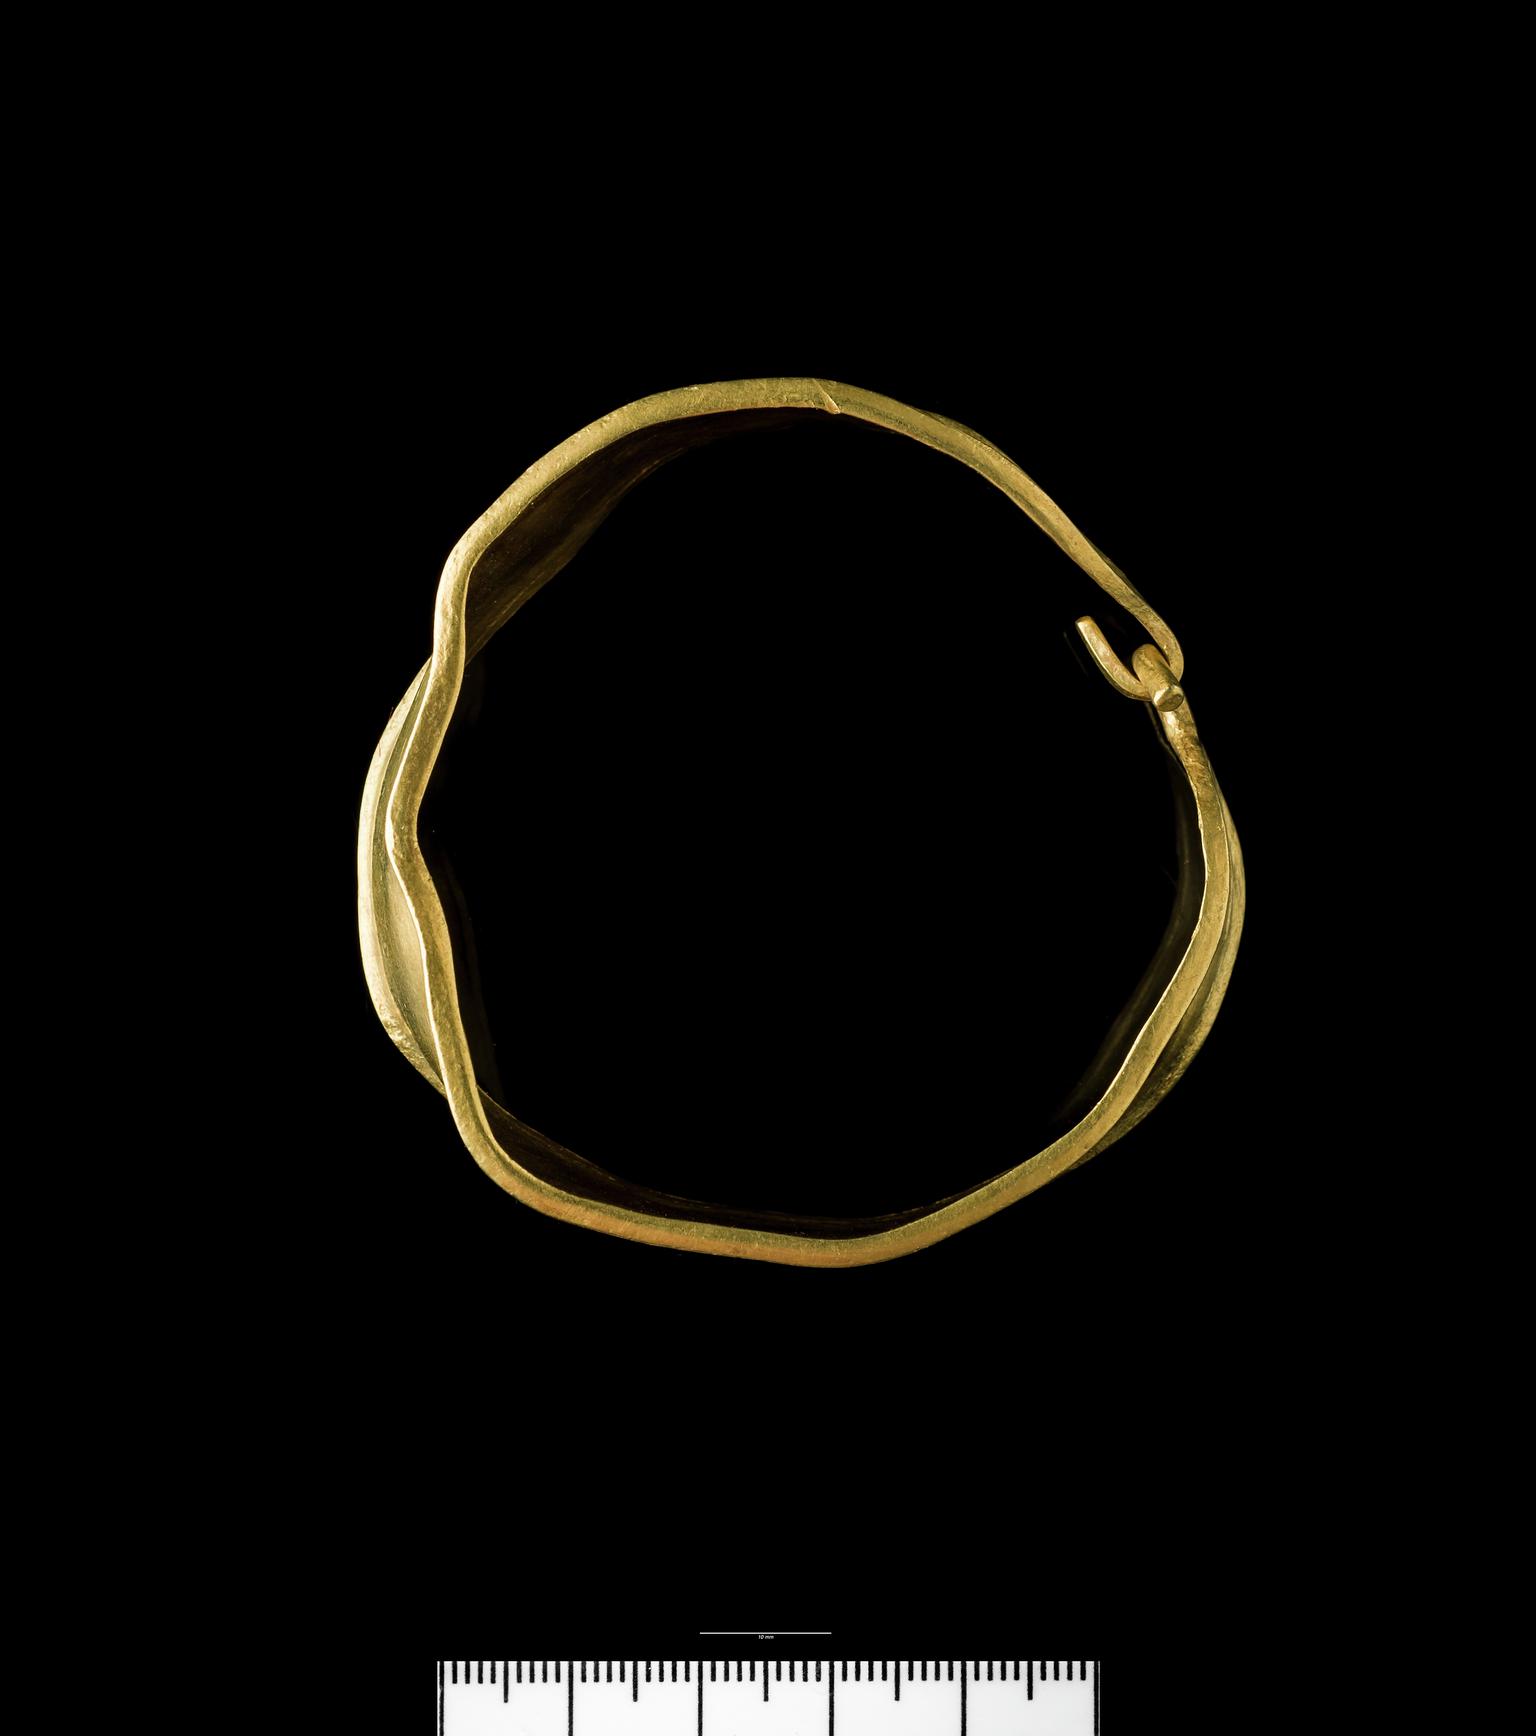 Bronze Age gold bracelet, armlet or anklet